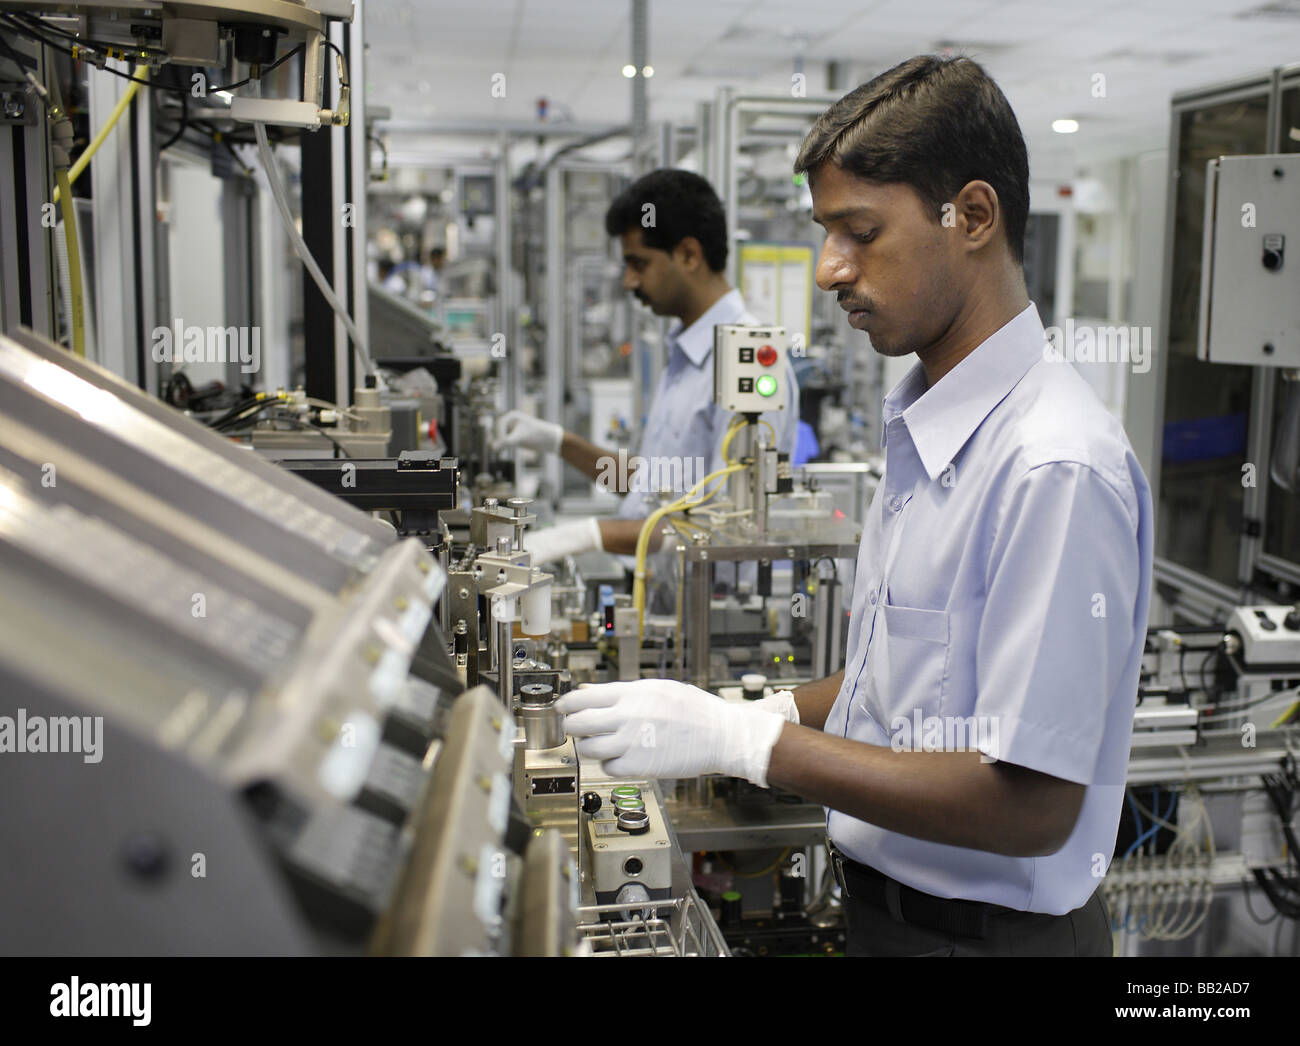 Mitarbeiter der Bosch Ltd in Bangalore Hier werden Dieseleinspritzpumpen gefertigt Indien Employees at Bosch Ltd Bangalore India Stock Photo